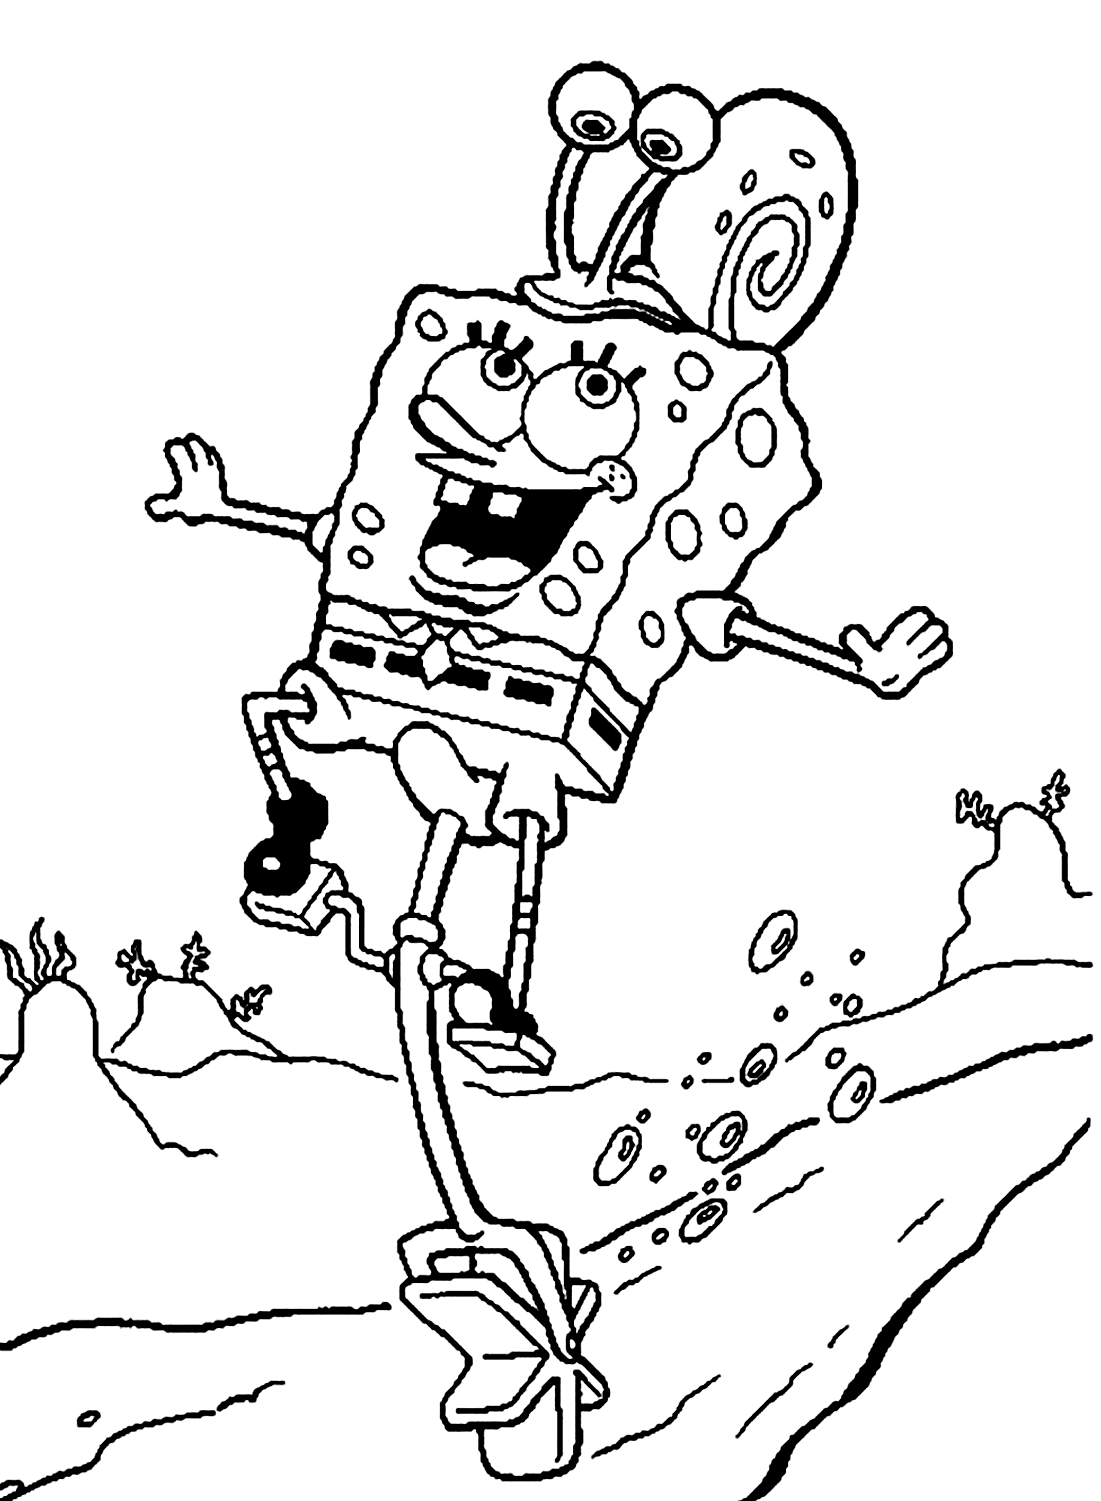 SpongeBob spielt mit dem Schnecken-Farbblatt von SpongeBob